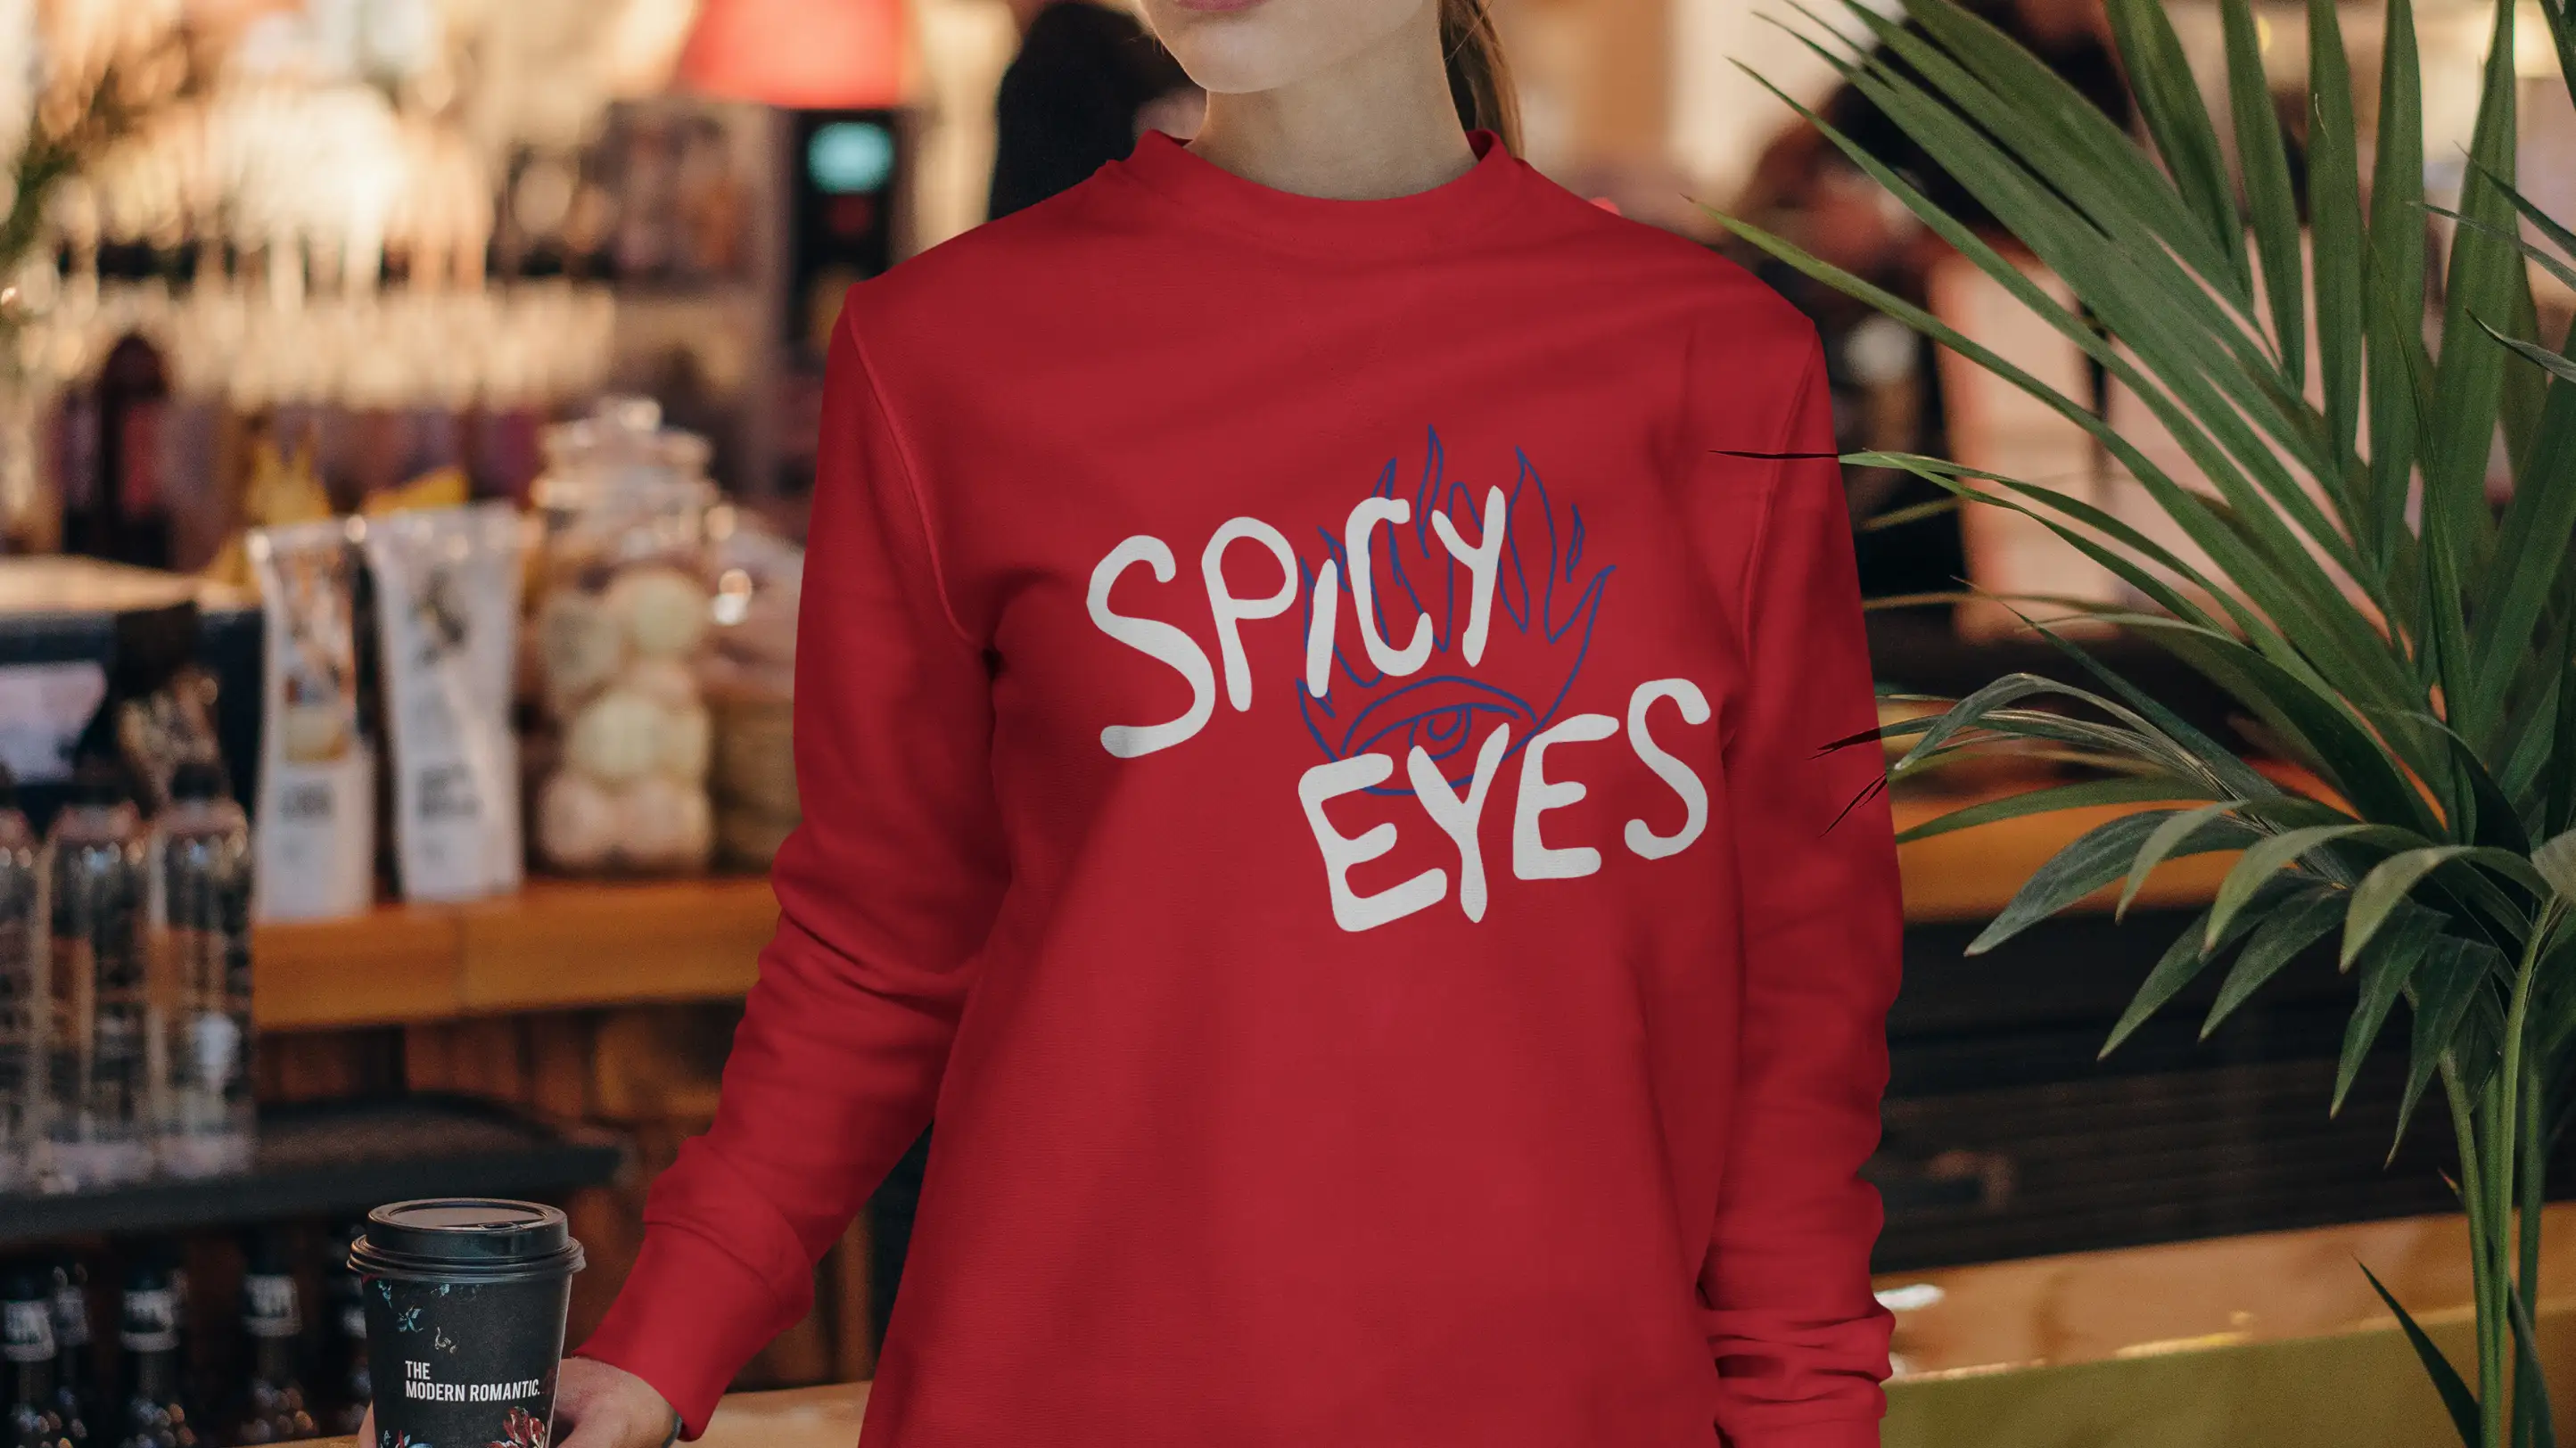 Spicy Eyes logo design on red sweatshirt.